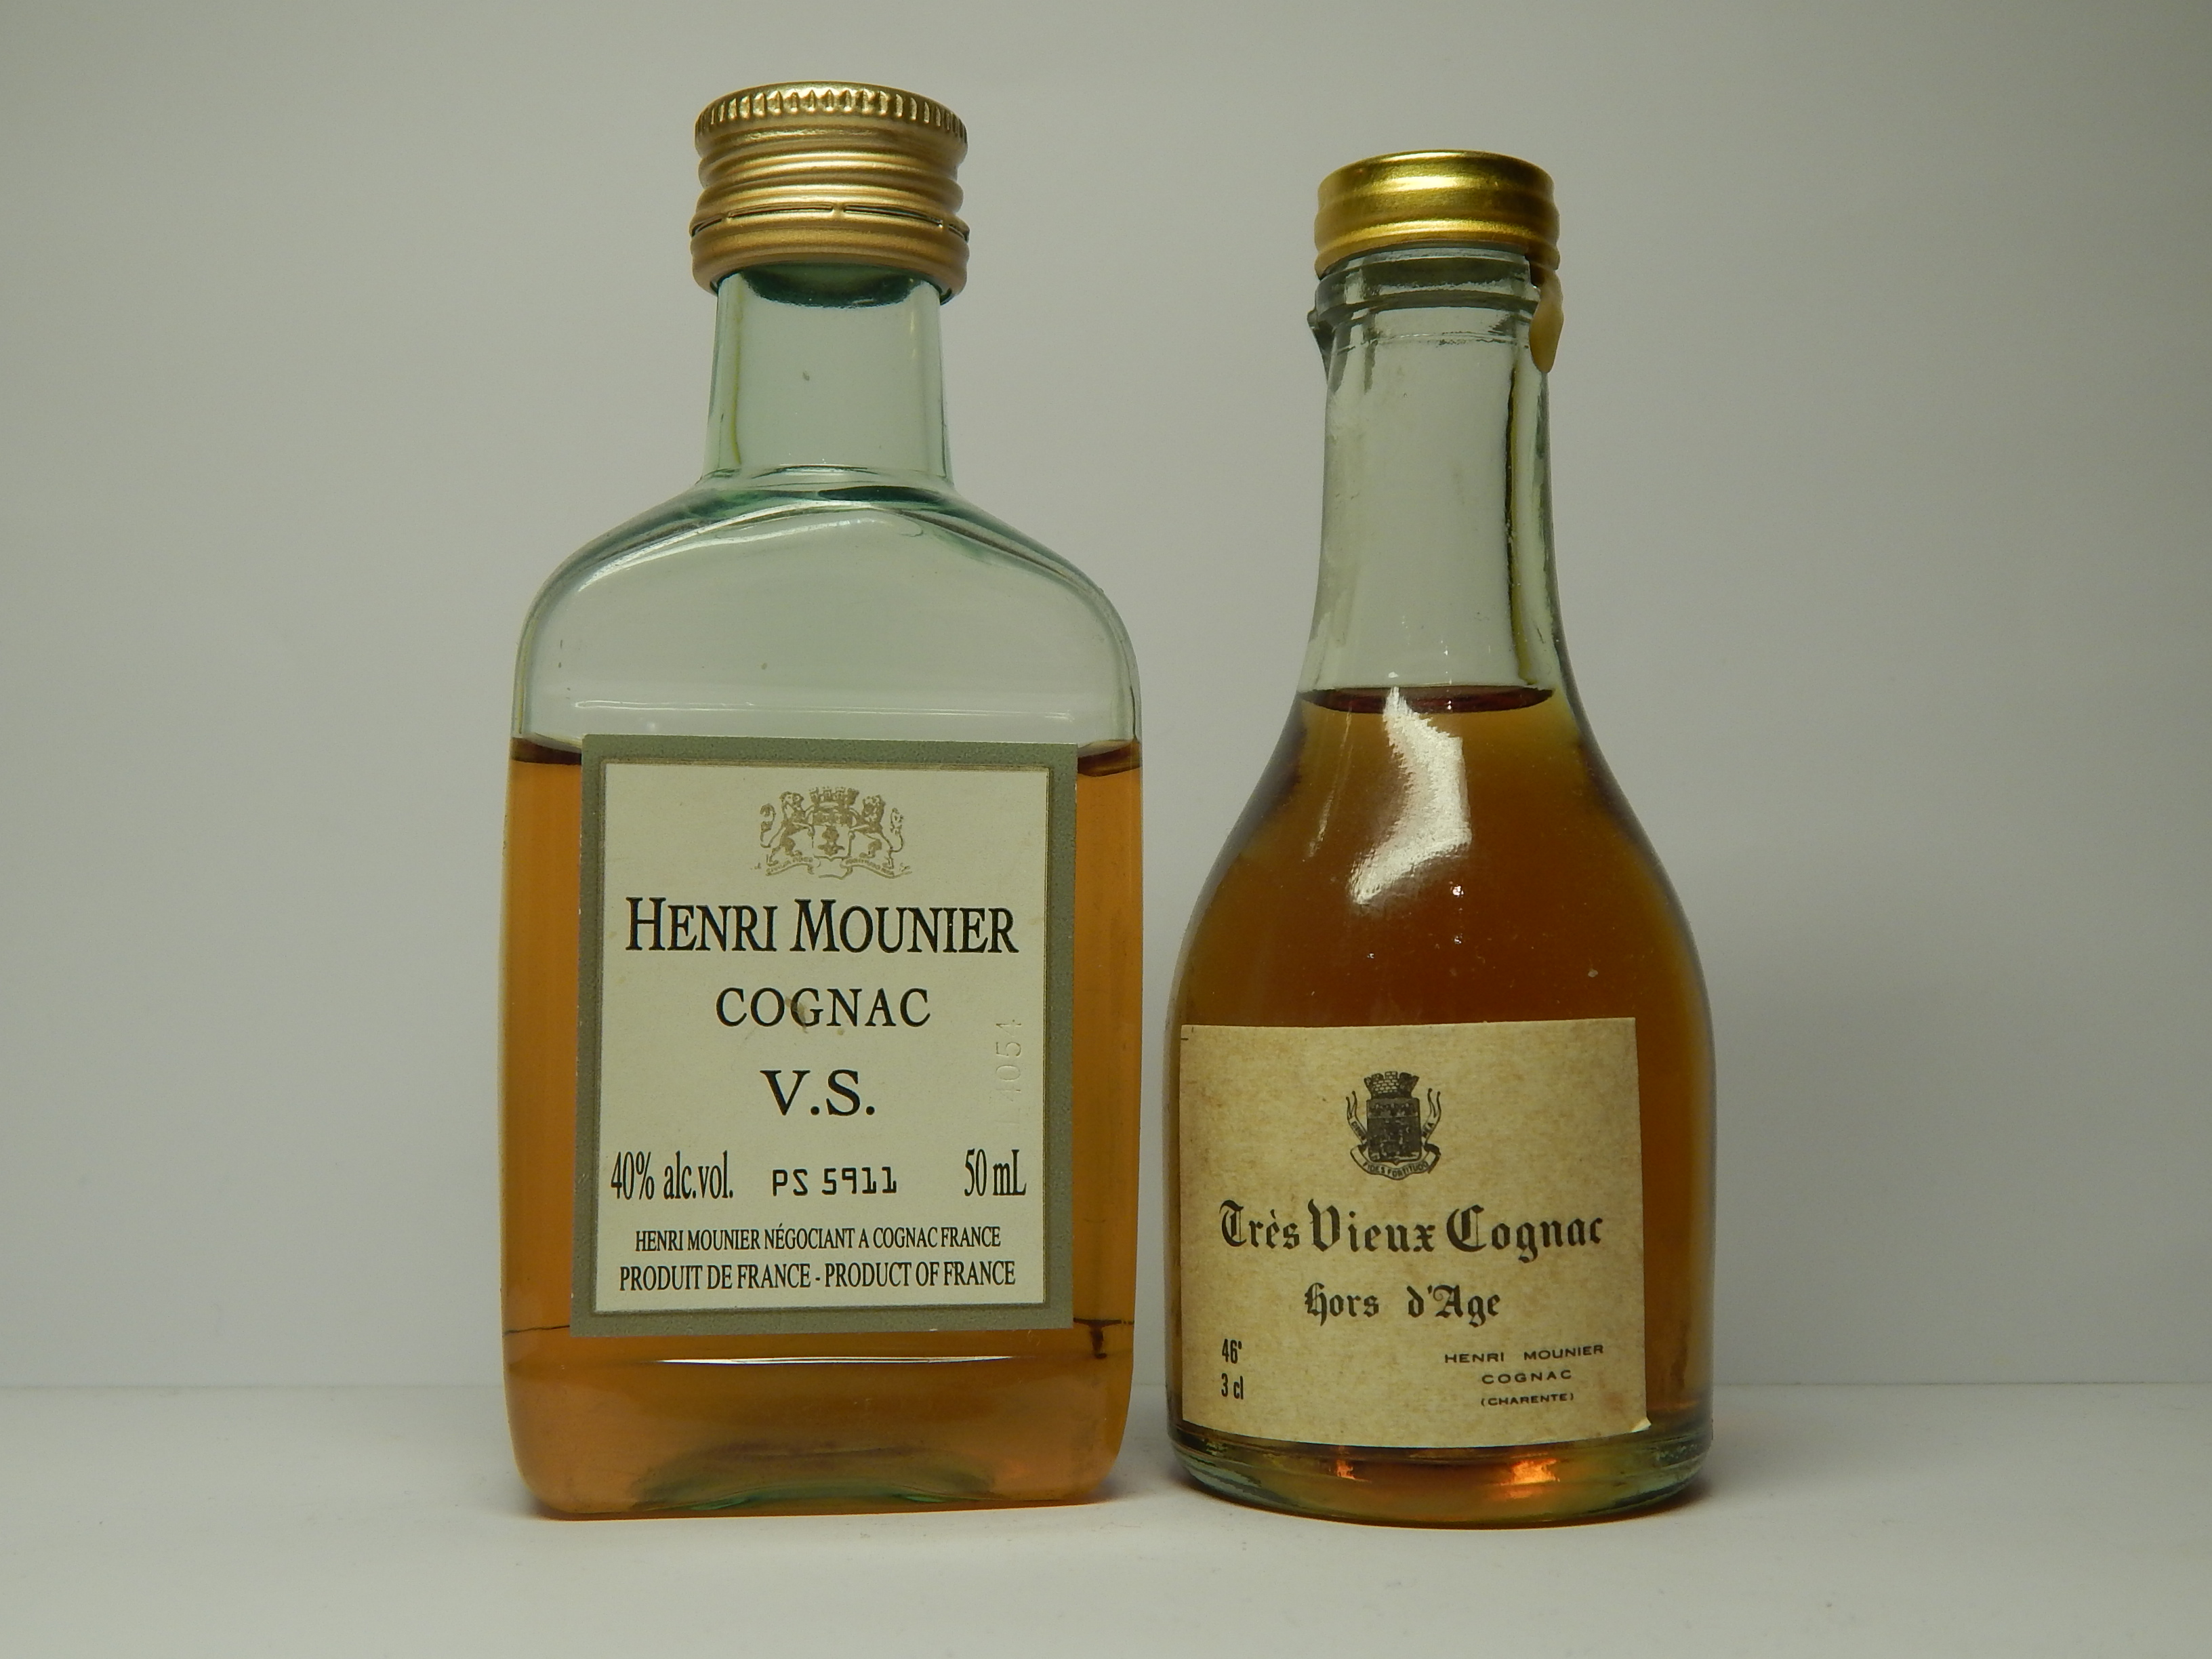 HENRI MOUNIER V.S. - Hors d´Age Cognac